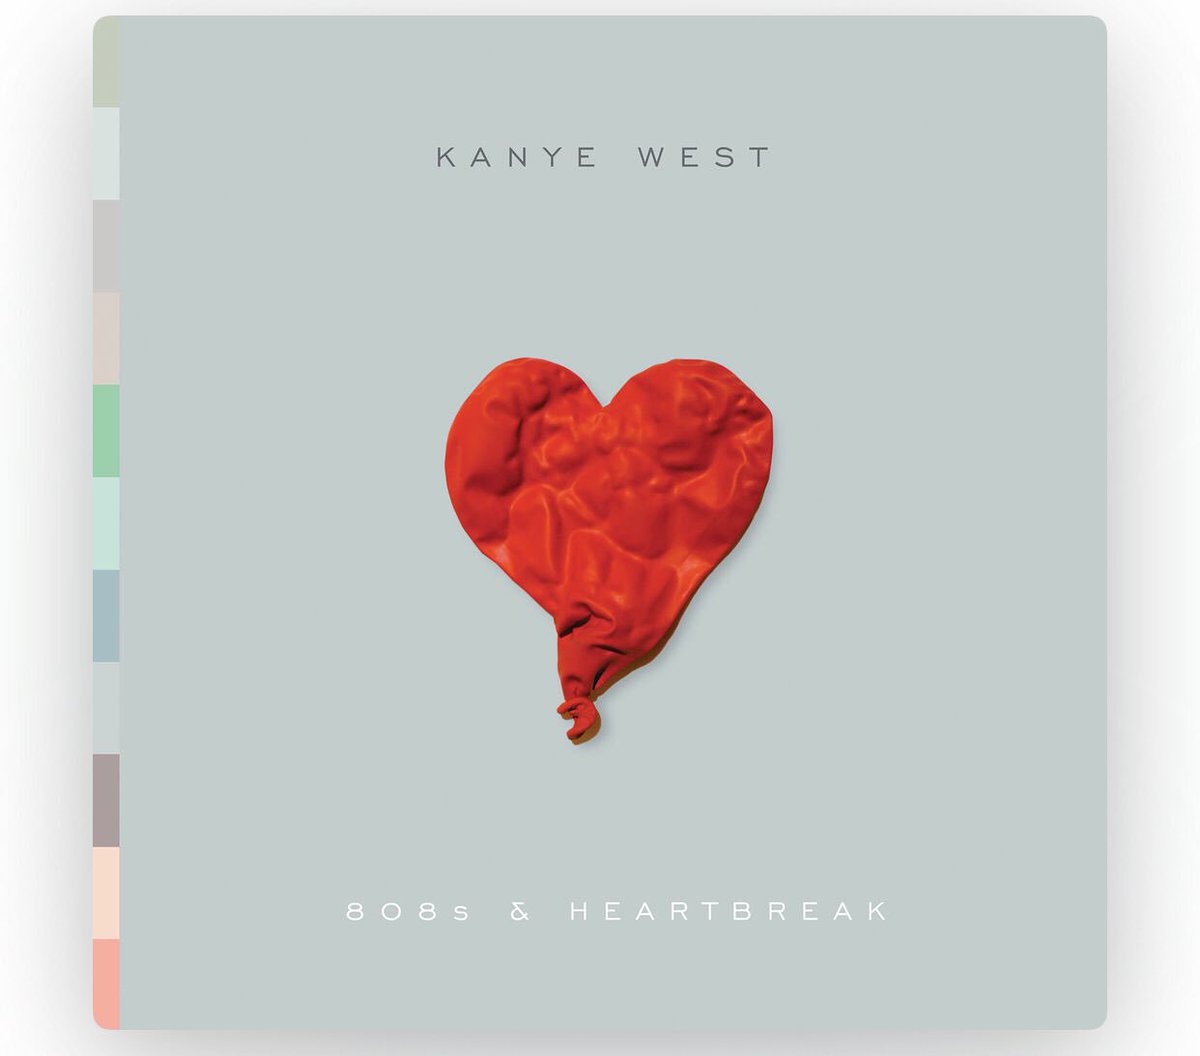 40. Kanye West - Heartbreak